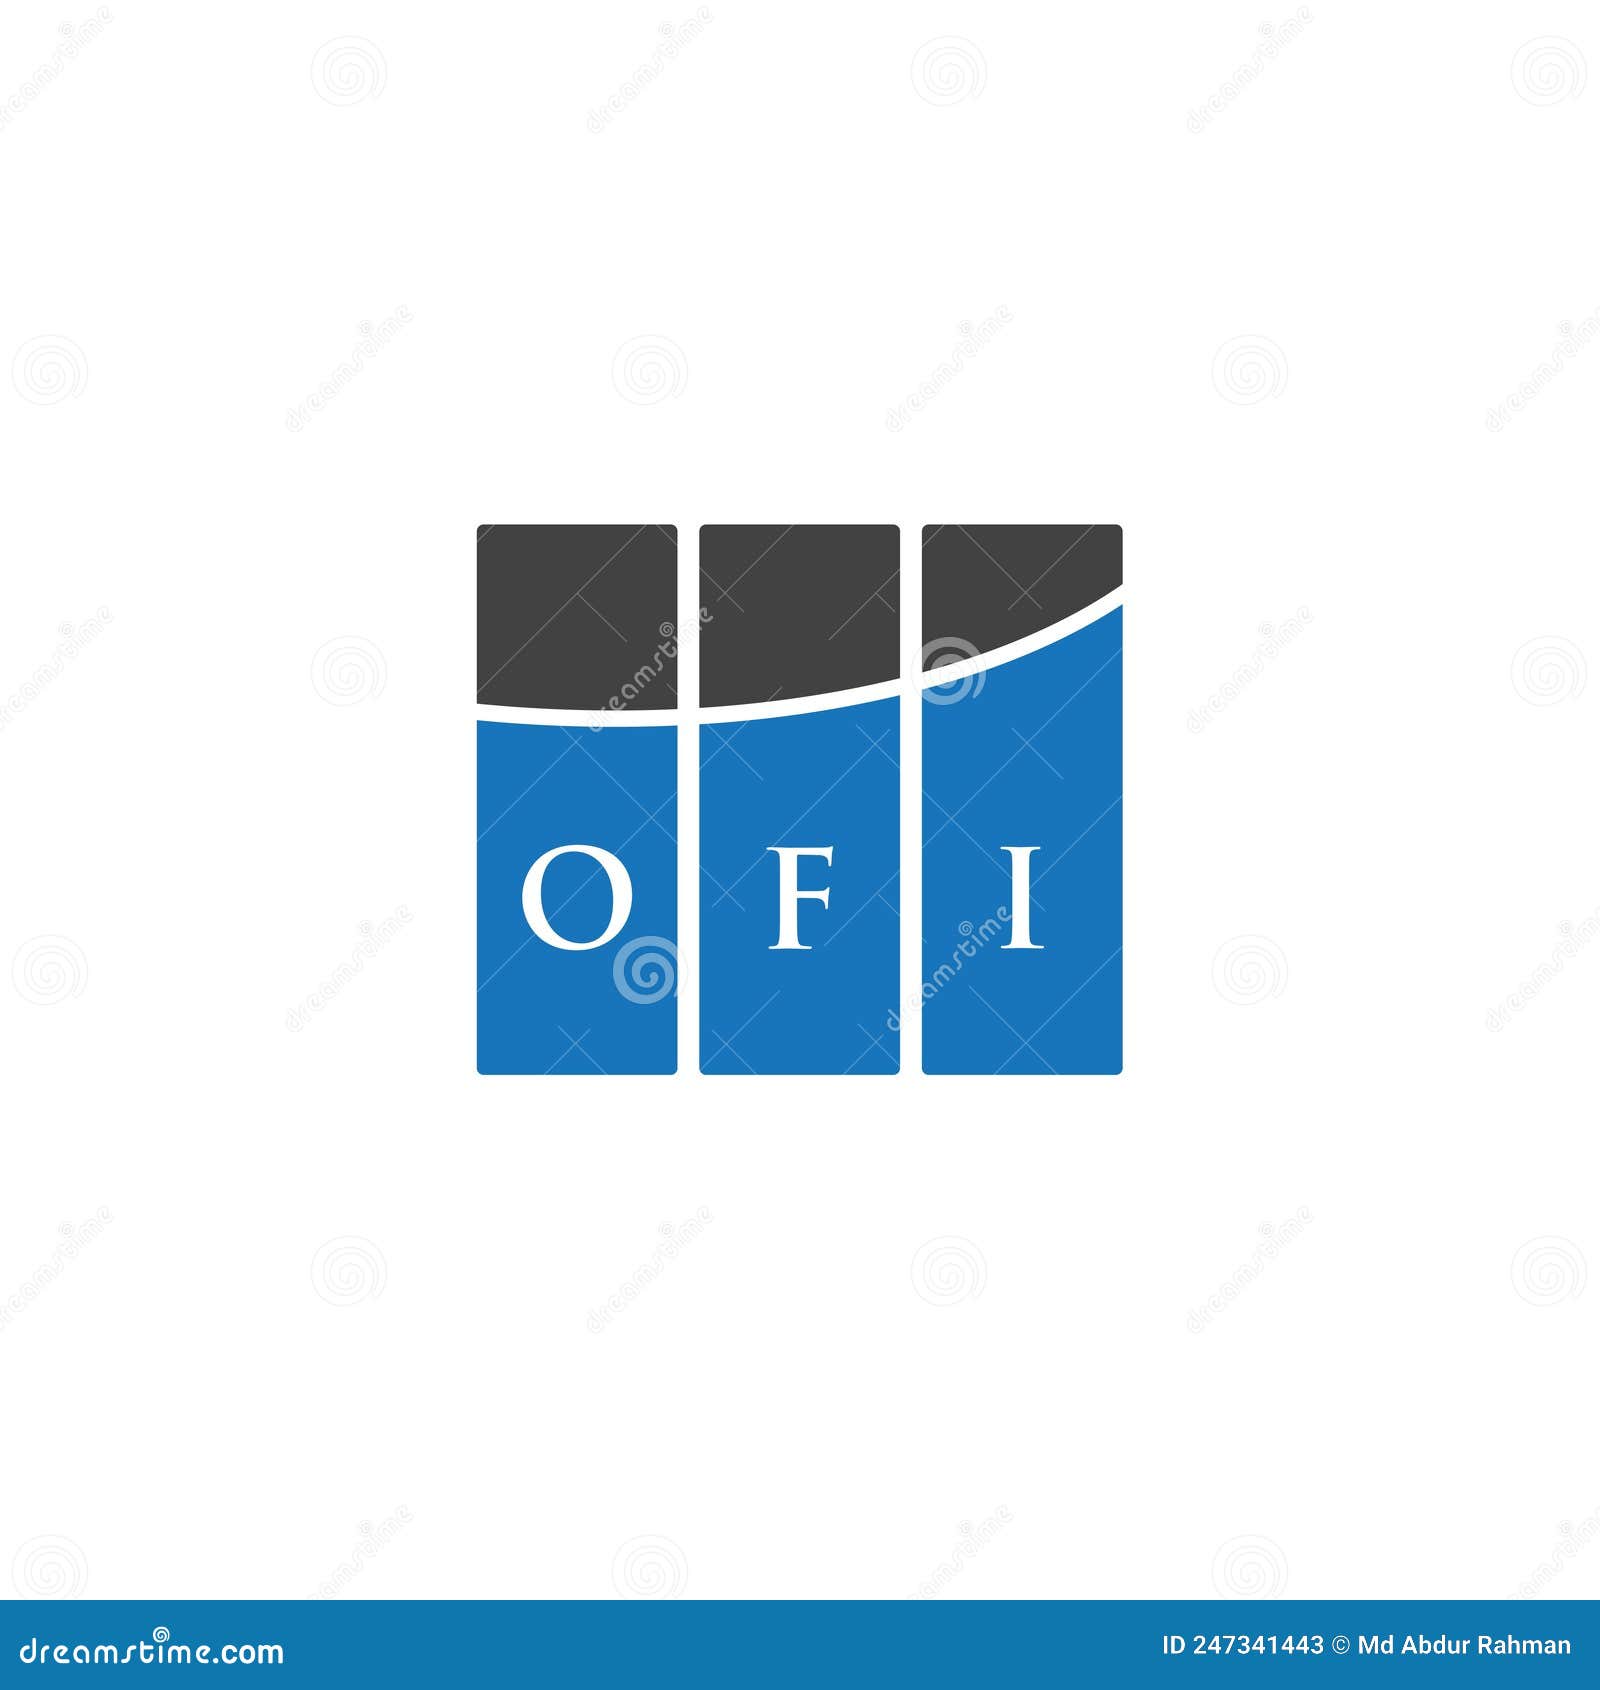 ofi letter logo  on white background. ofi creative initials letter logo concept. ofi letter 